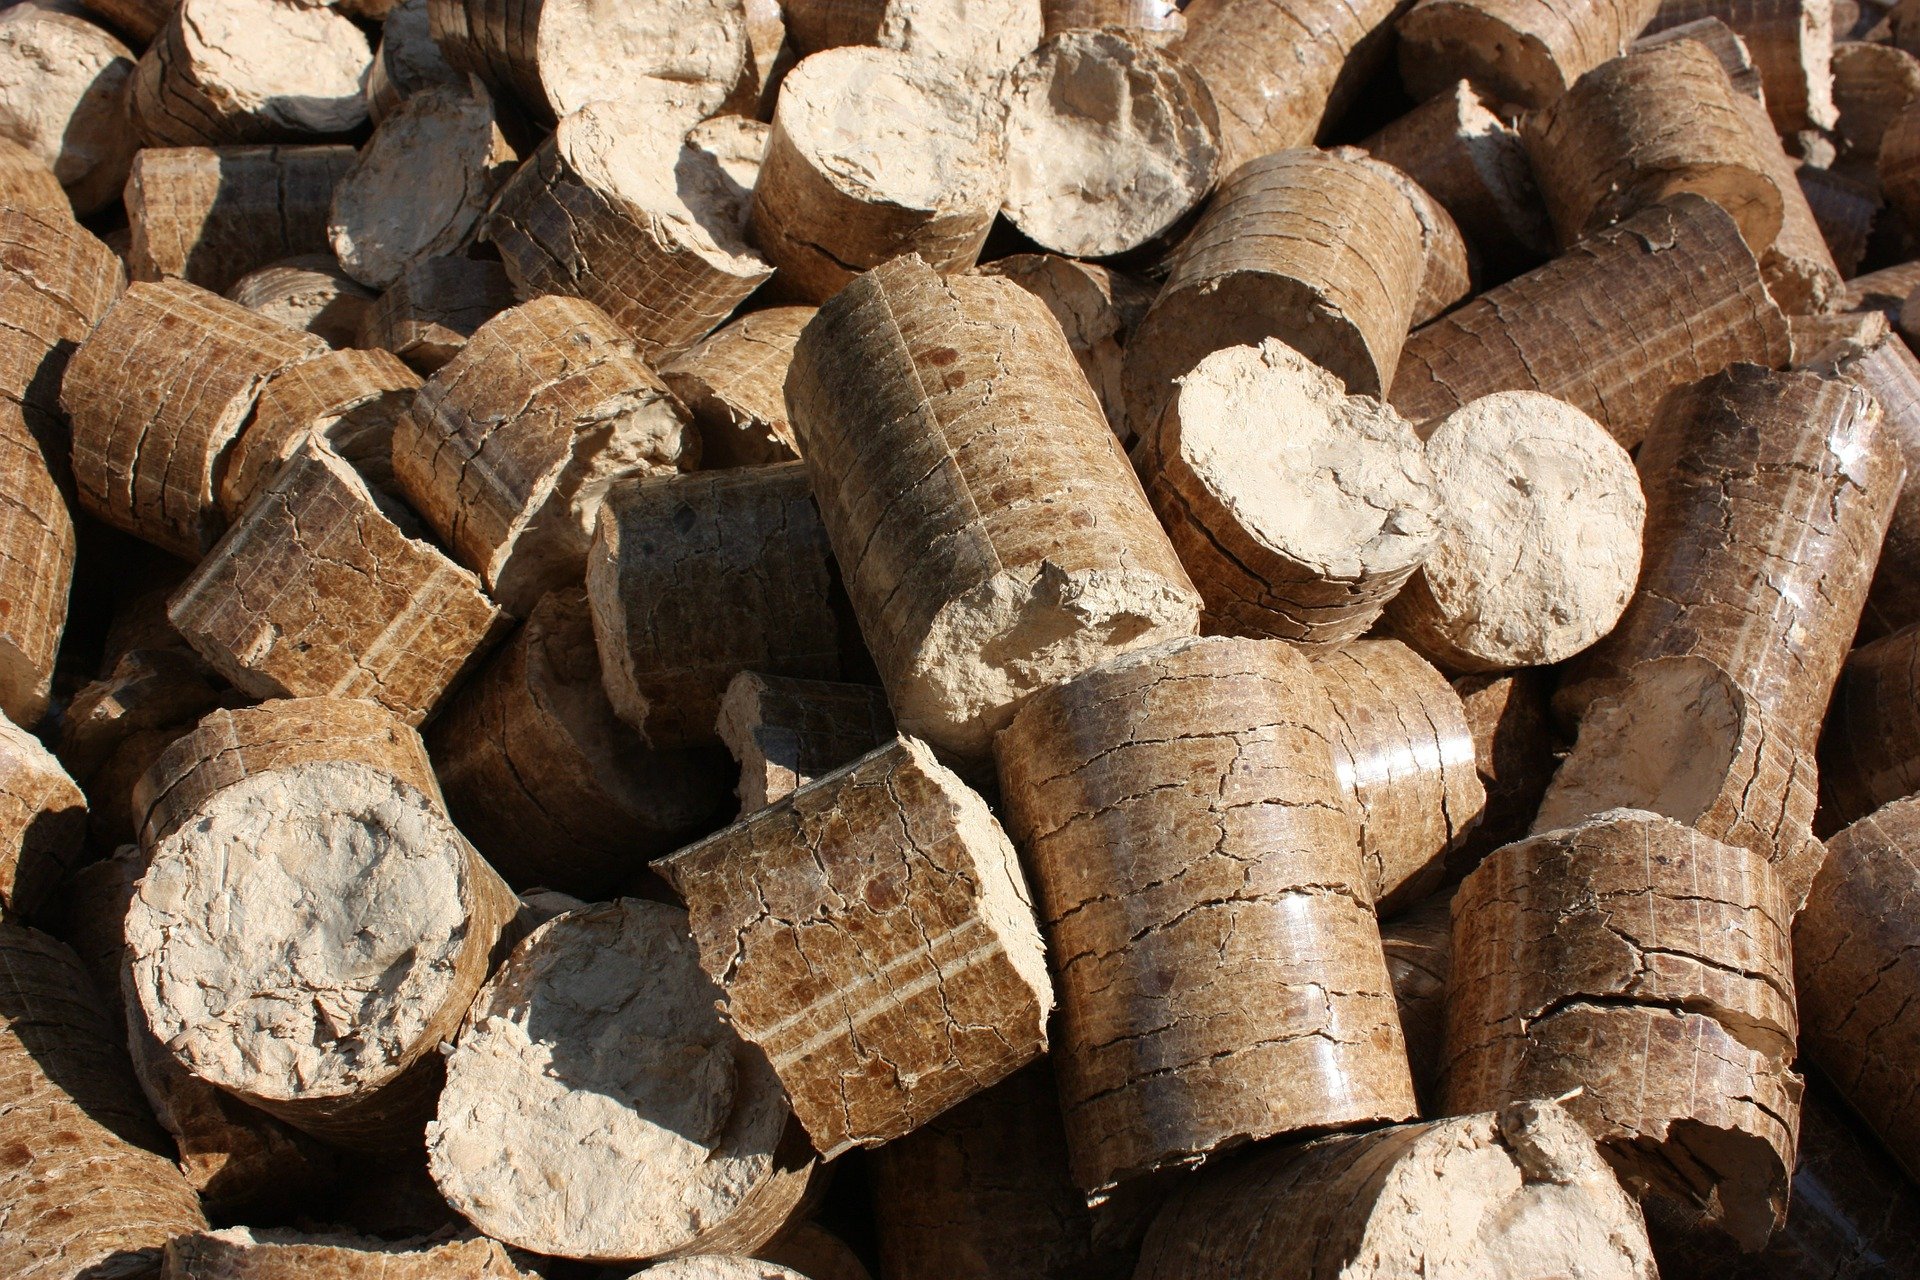 Holzpellets spenden Wärme und sind eine Alternative zu fossilen Energieträgern wie Gas oder Öl – auch für Kirchenheizungen.